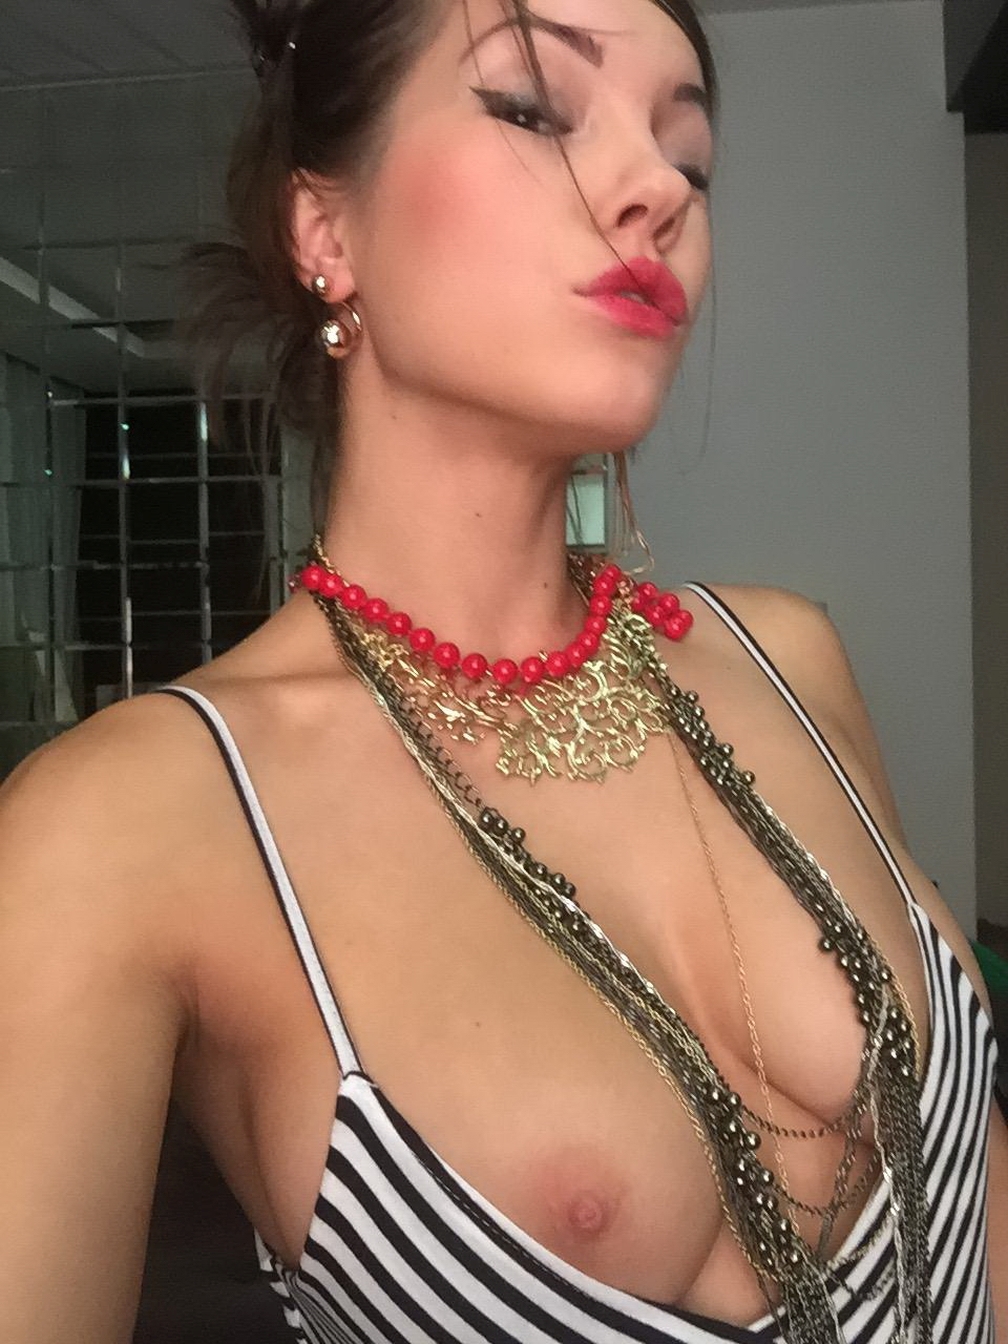 http://dru.pl/blog/stuff/wysportowana-dziewczyna/sexy-fit-sportive-girl-naked-on-vacation-young-amateur-selfie-52.jpg